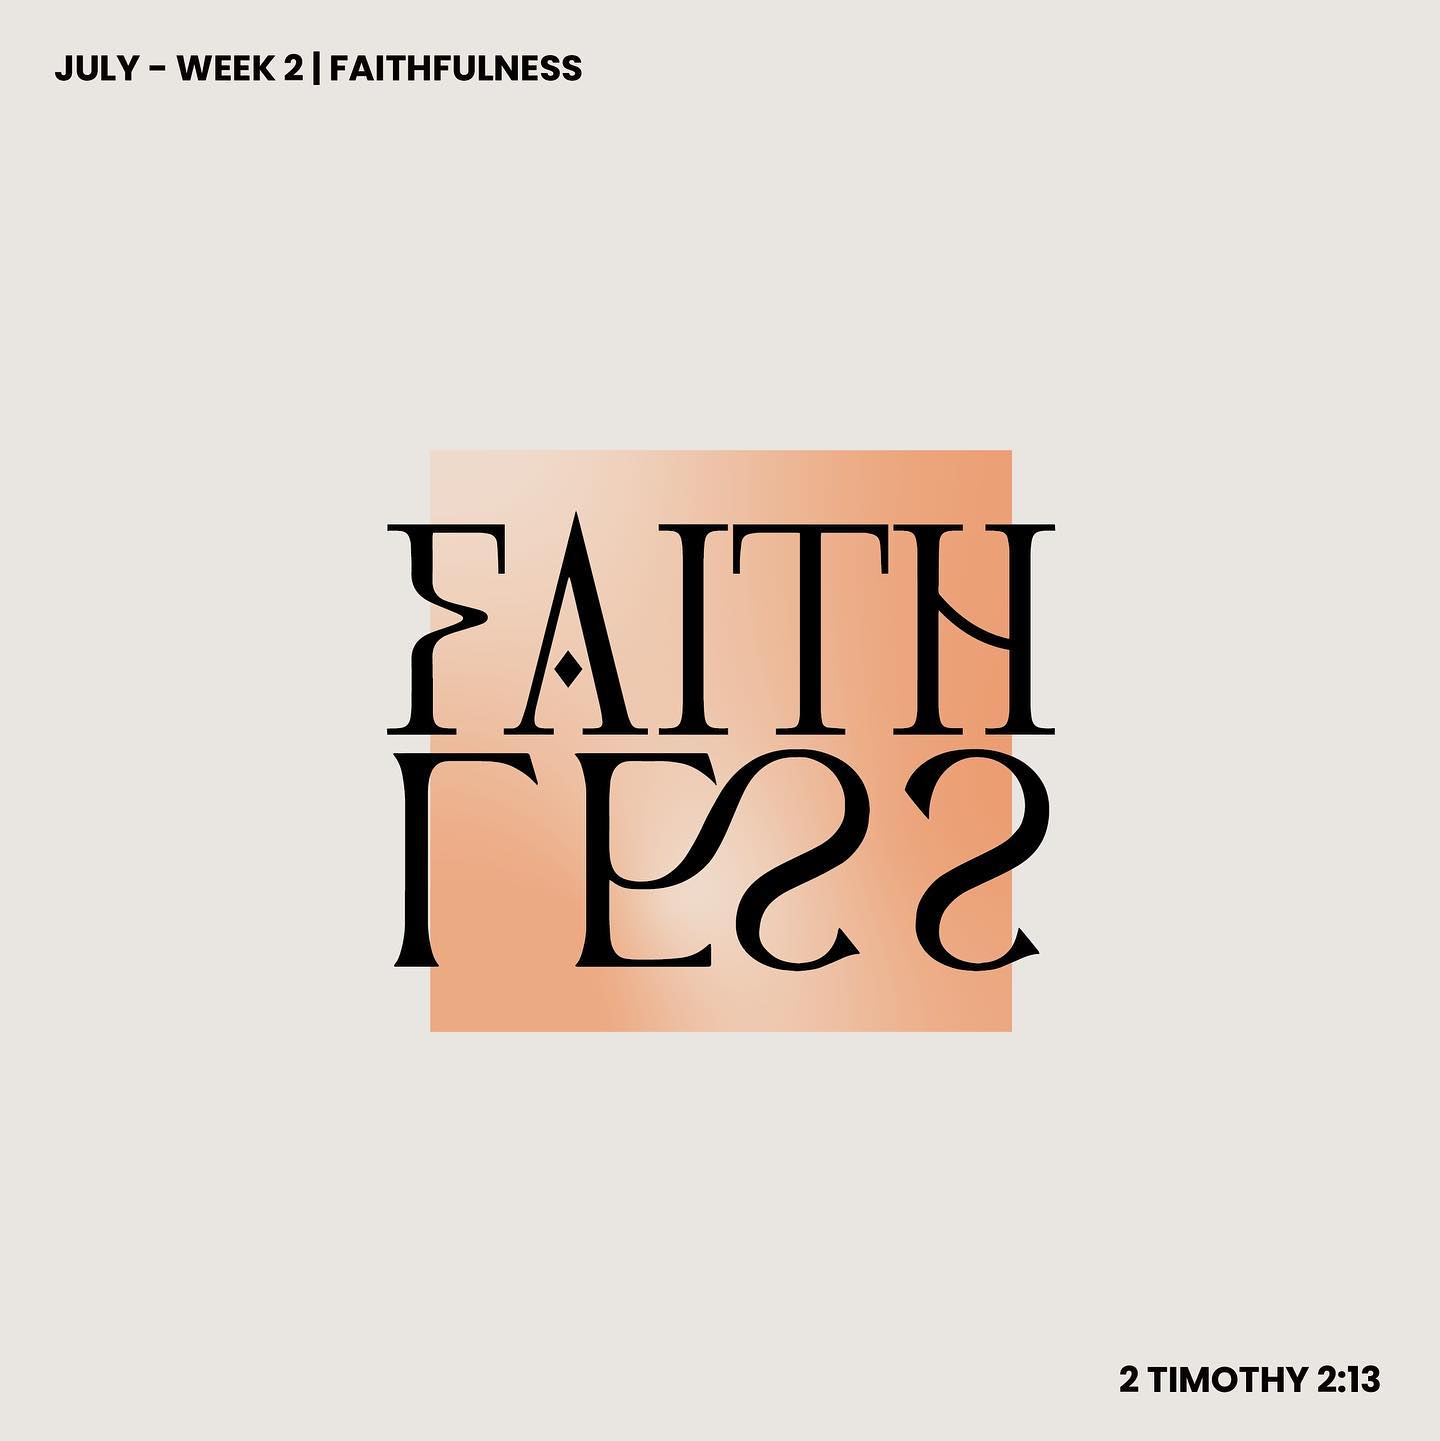 2 Timothy 2:13 (Faithfulness - Week 2)